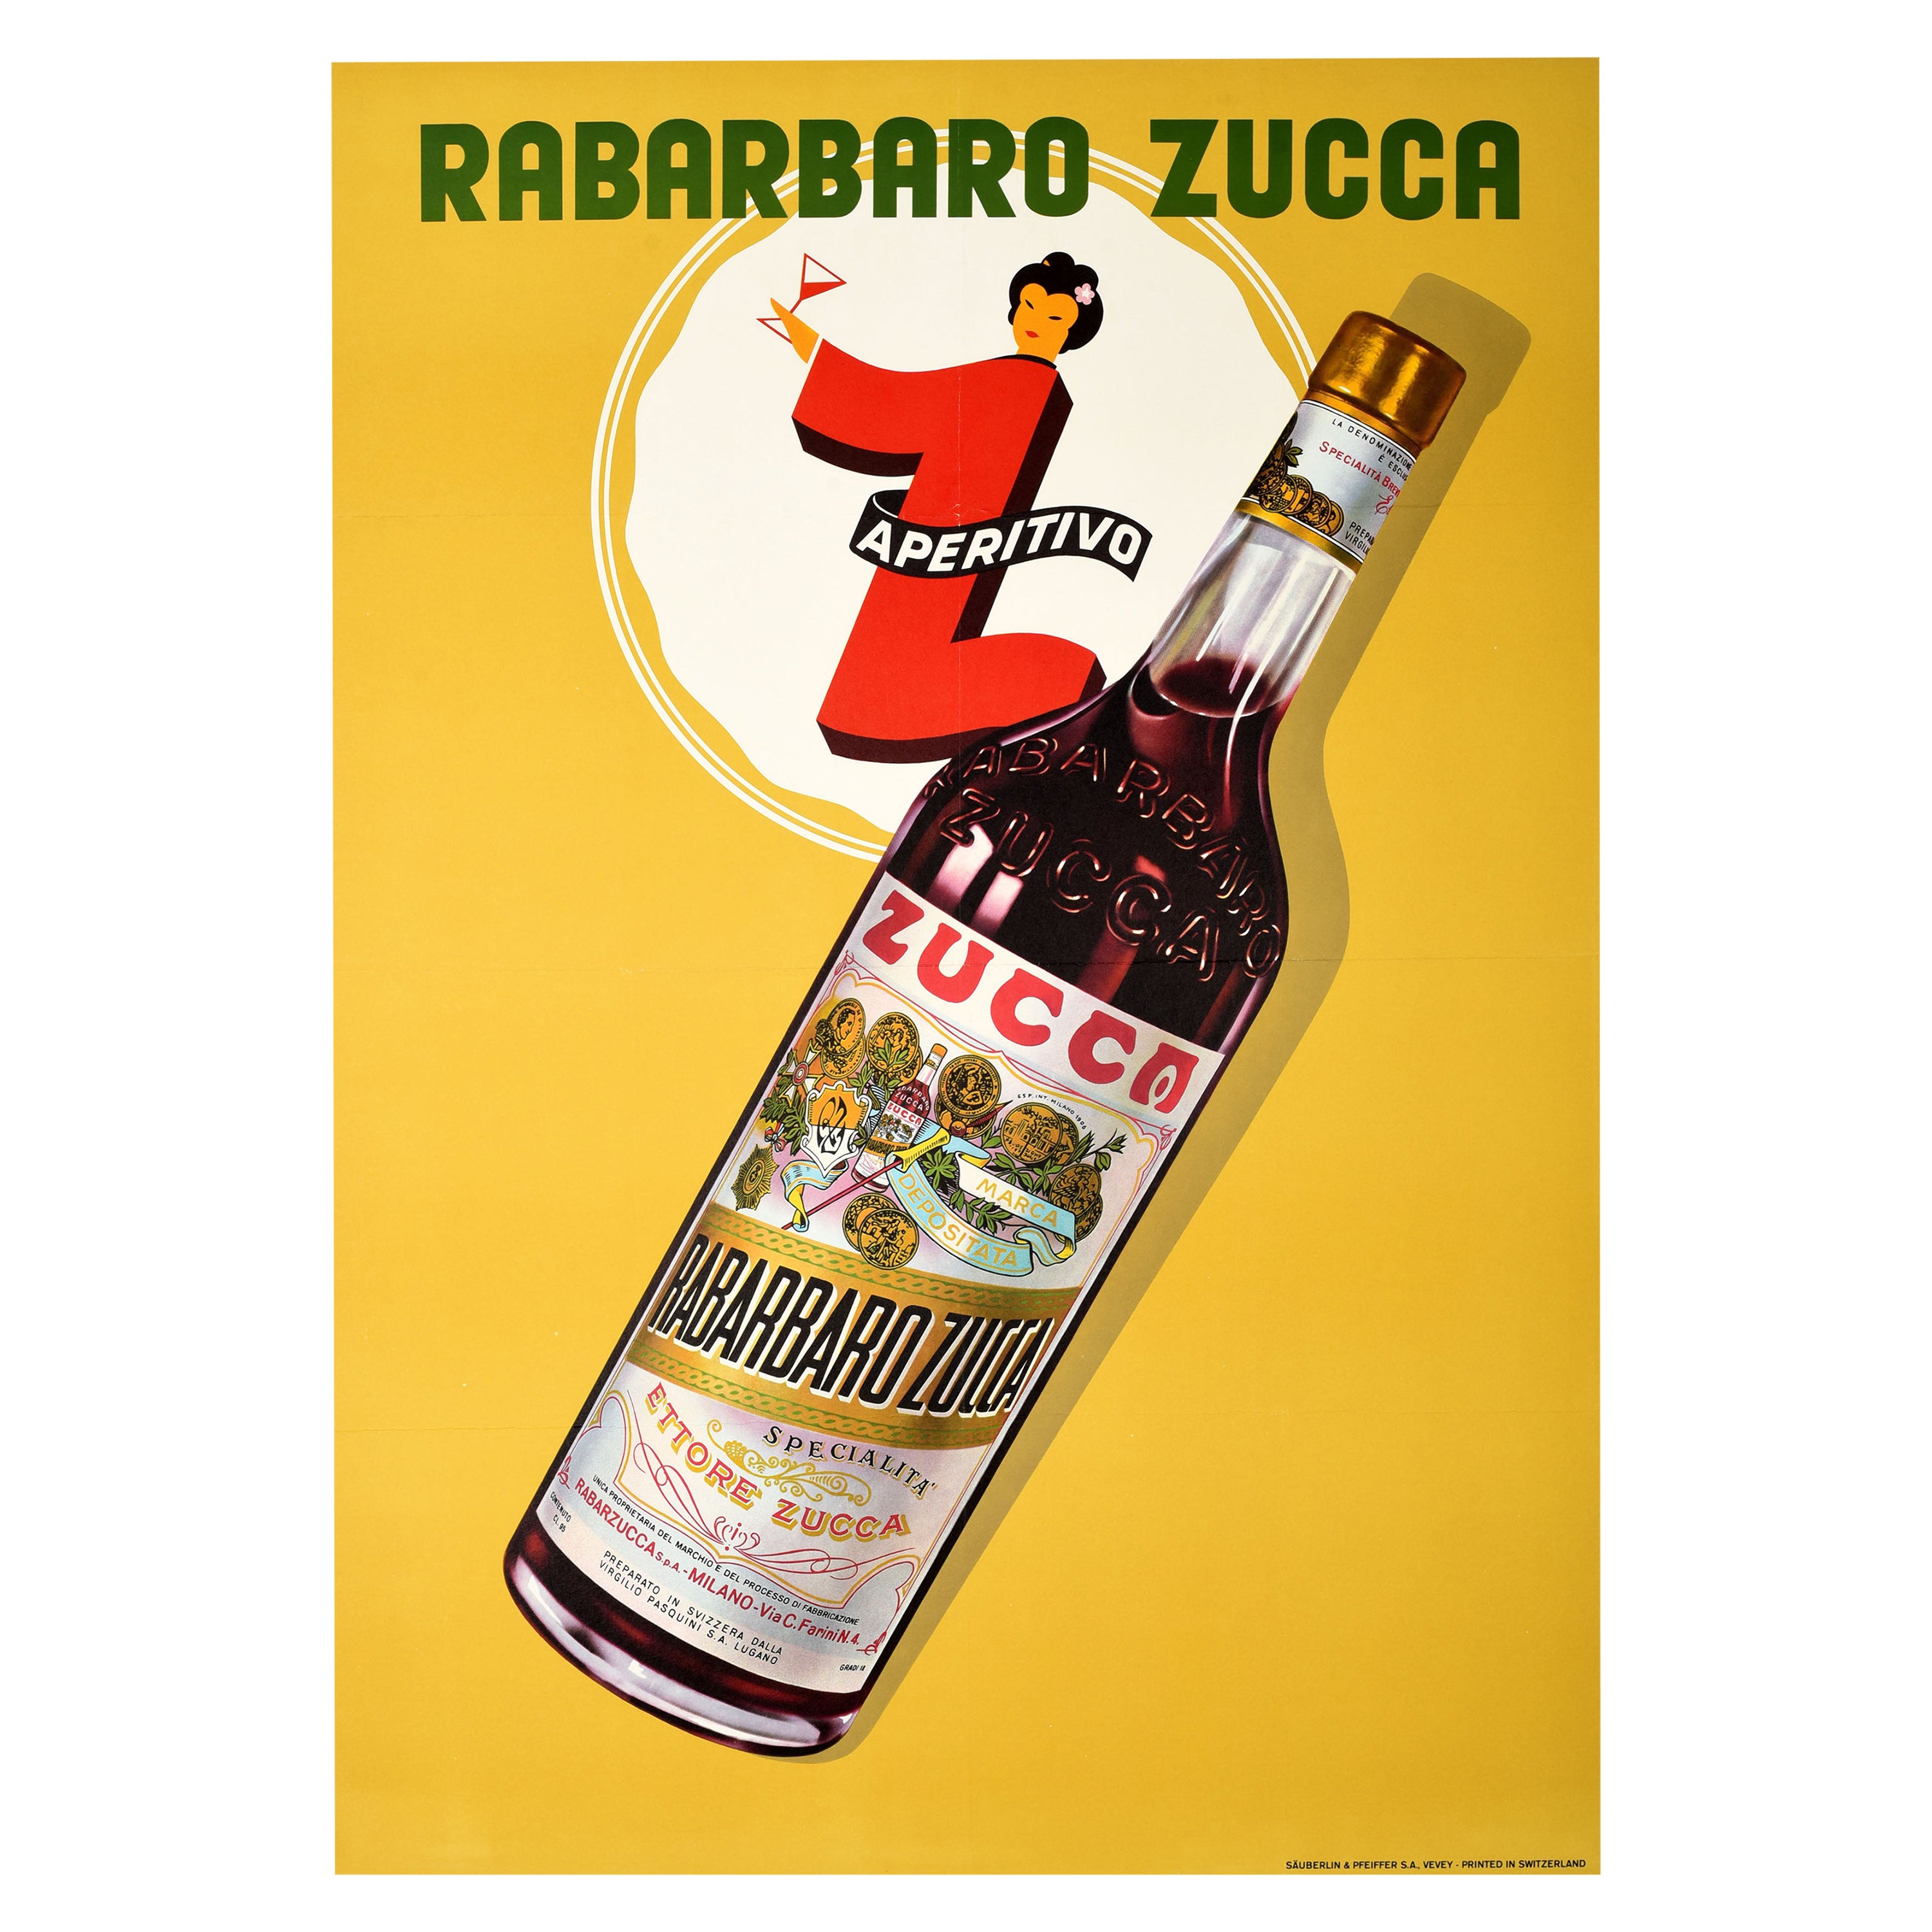 Affiche publicitaire originale vintage pour les boissons Rabarbaro Zucca, Dessin suisse